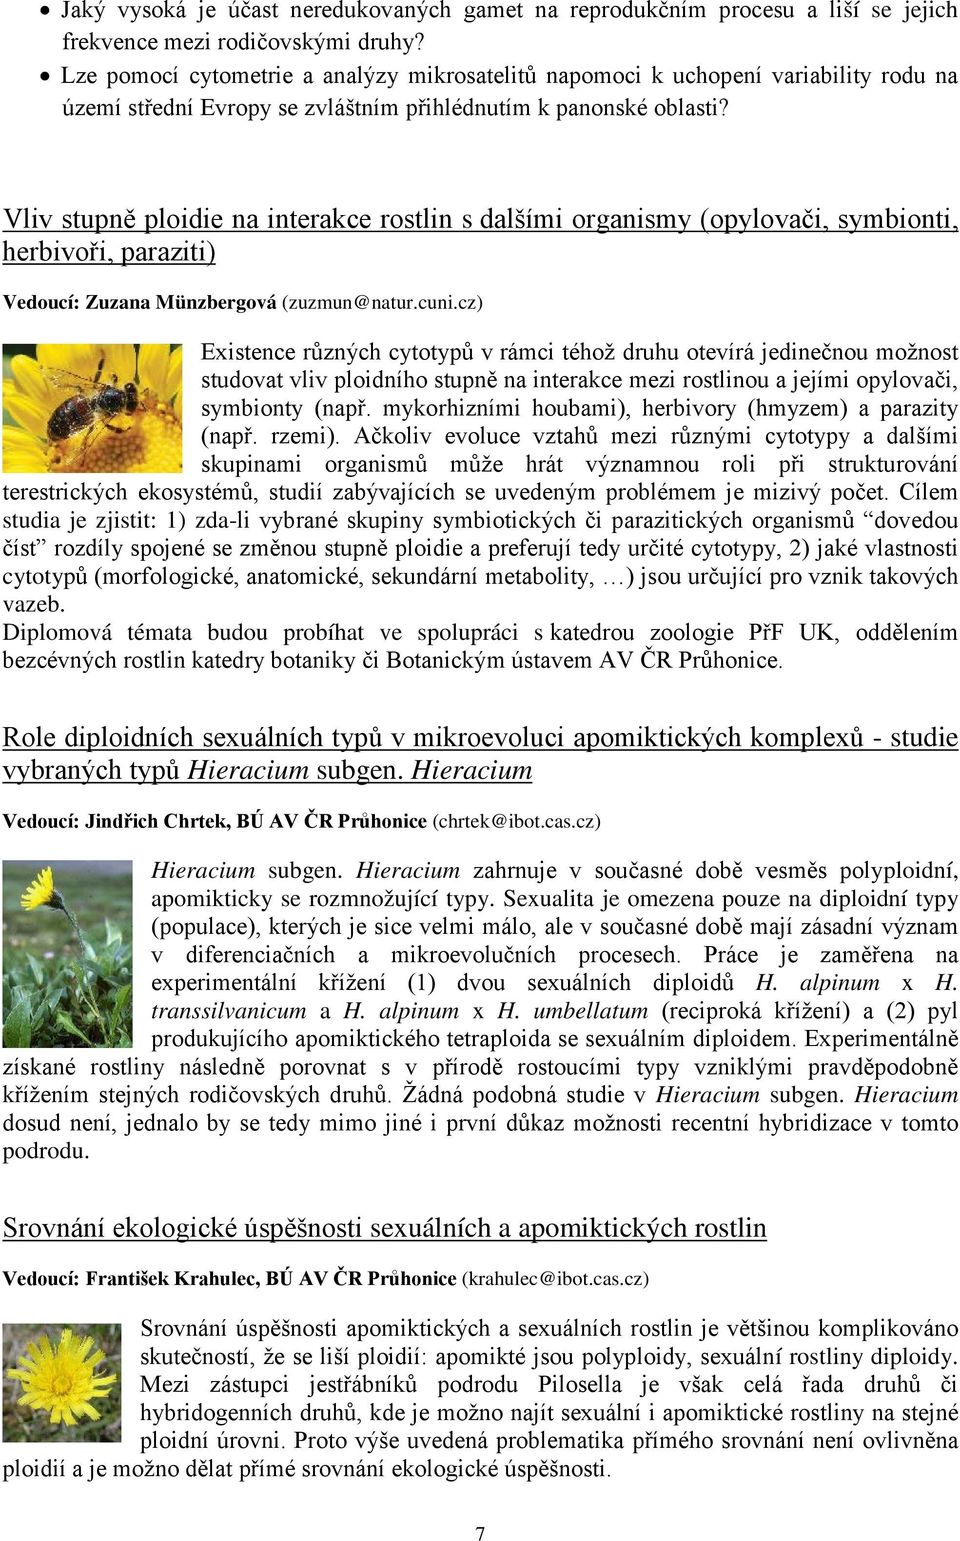 Vliv stupně ploidie na interakce rostlin s dalšími organismy (opylovači, symbionti, herbivoři, paraziti) Vedoucí: Zuzana Münzbergová (zuzmun@natur.cuni.